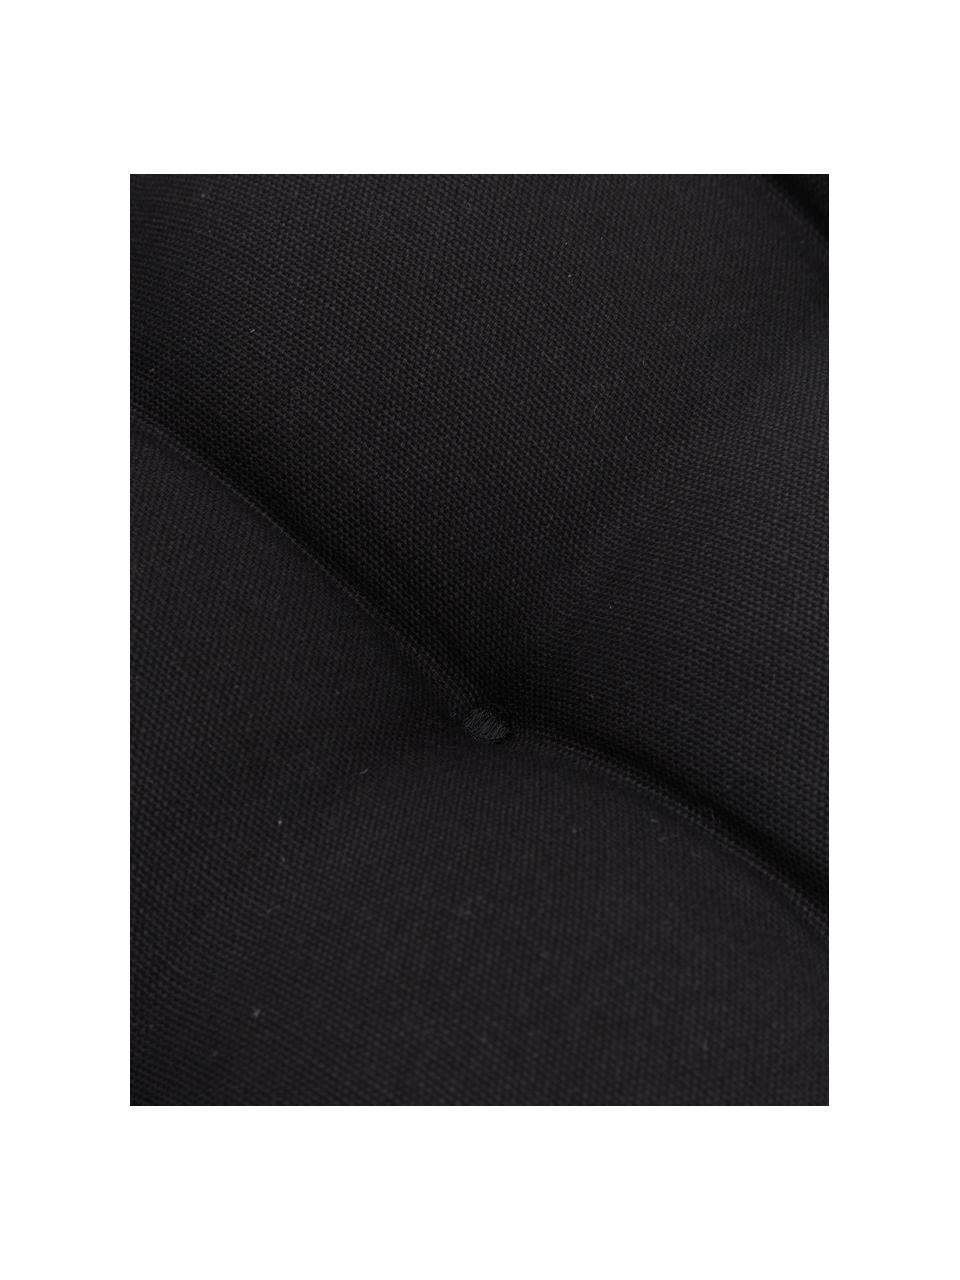 Baumwoll-Sitzkissen Ava in Schwarz mit Quasten, Bezug: 100% Baumwolle, Schwarz, B 40 x L 40 cm